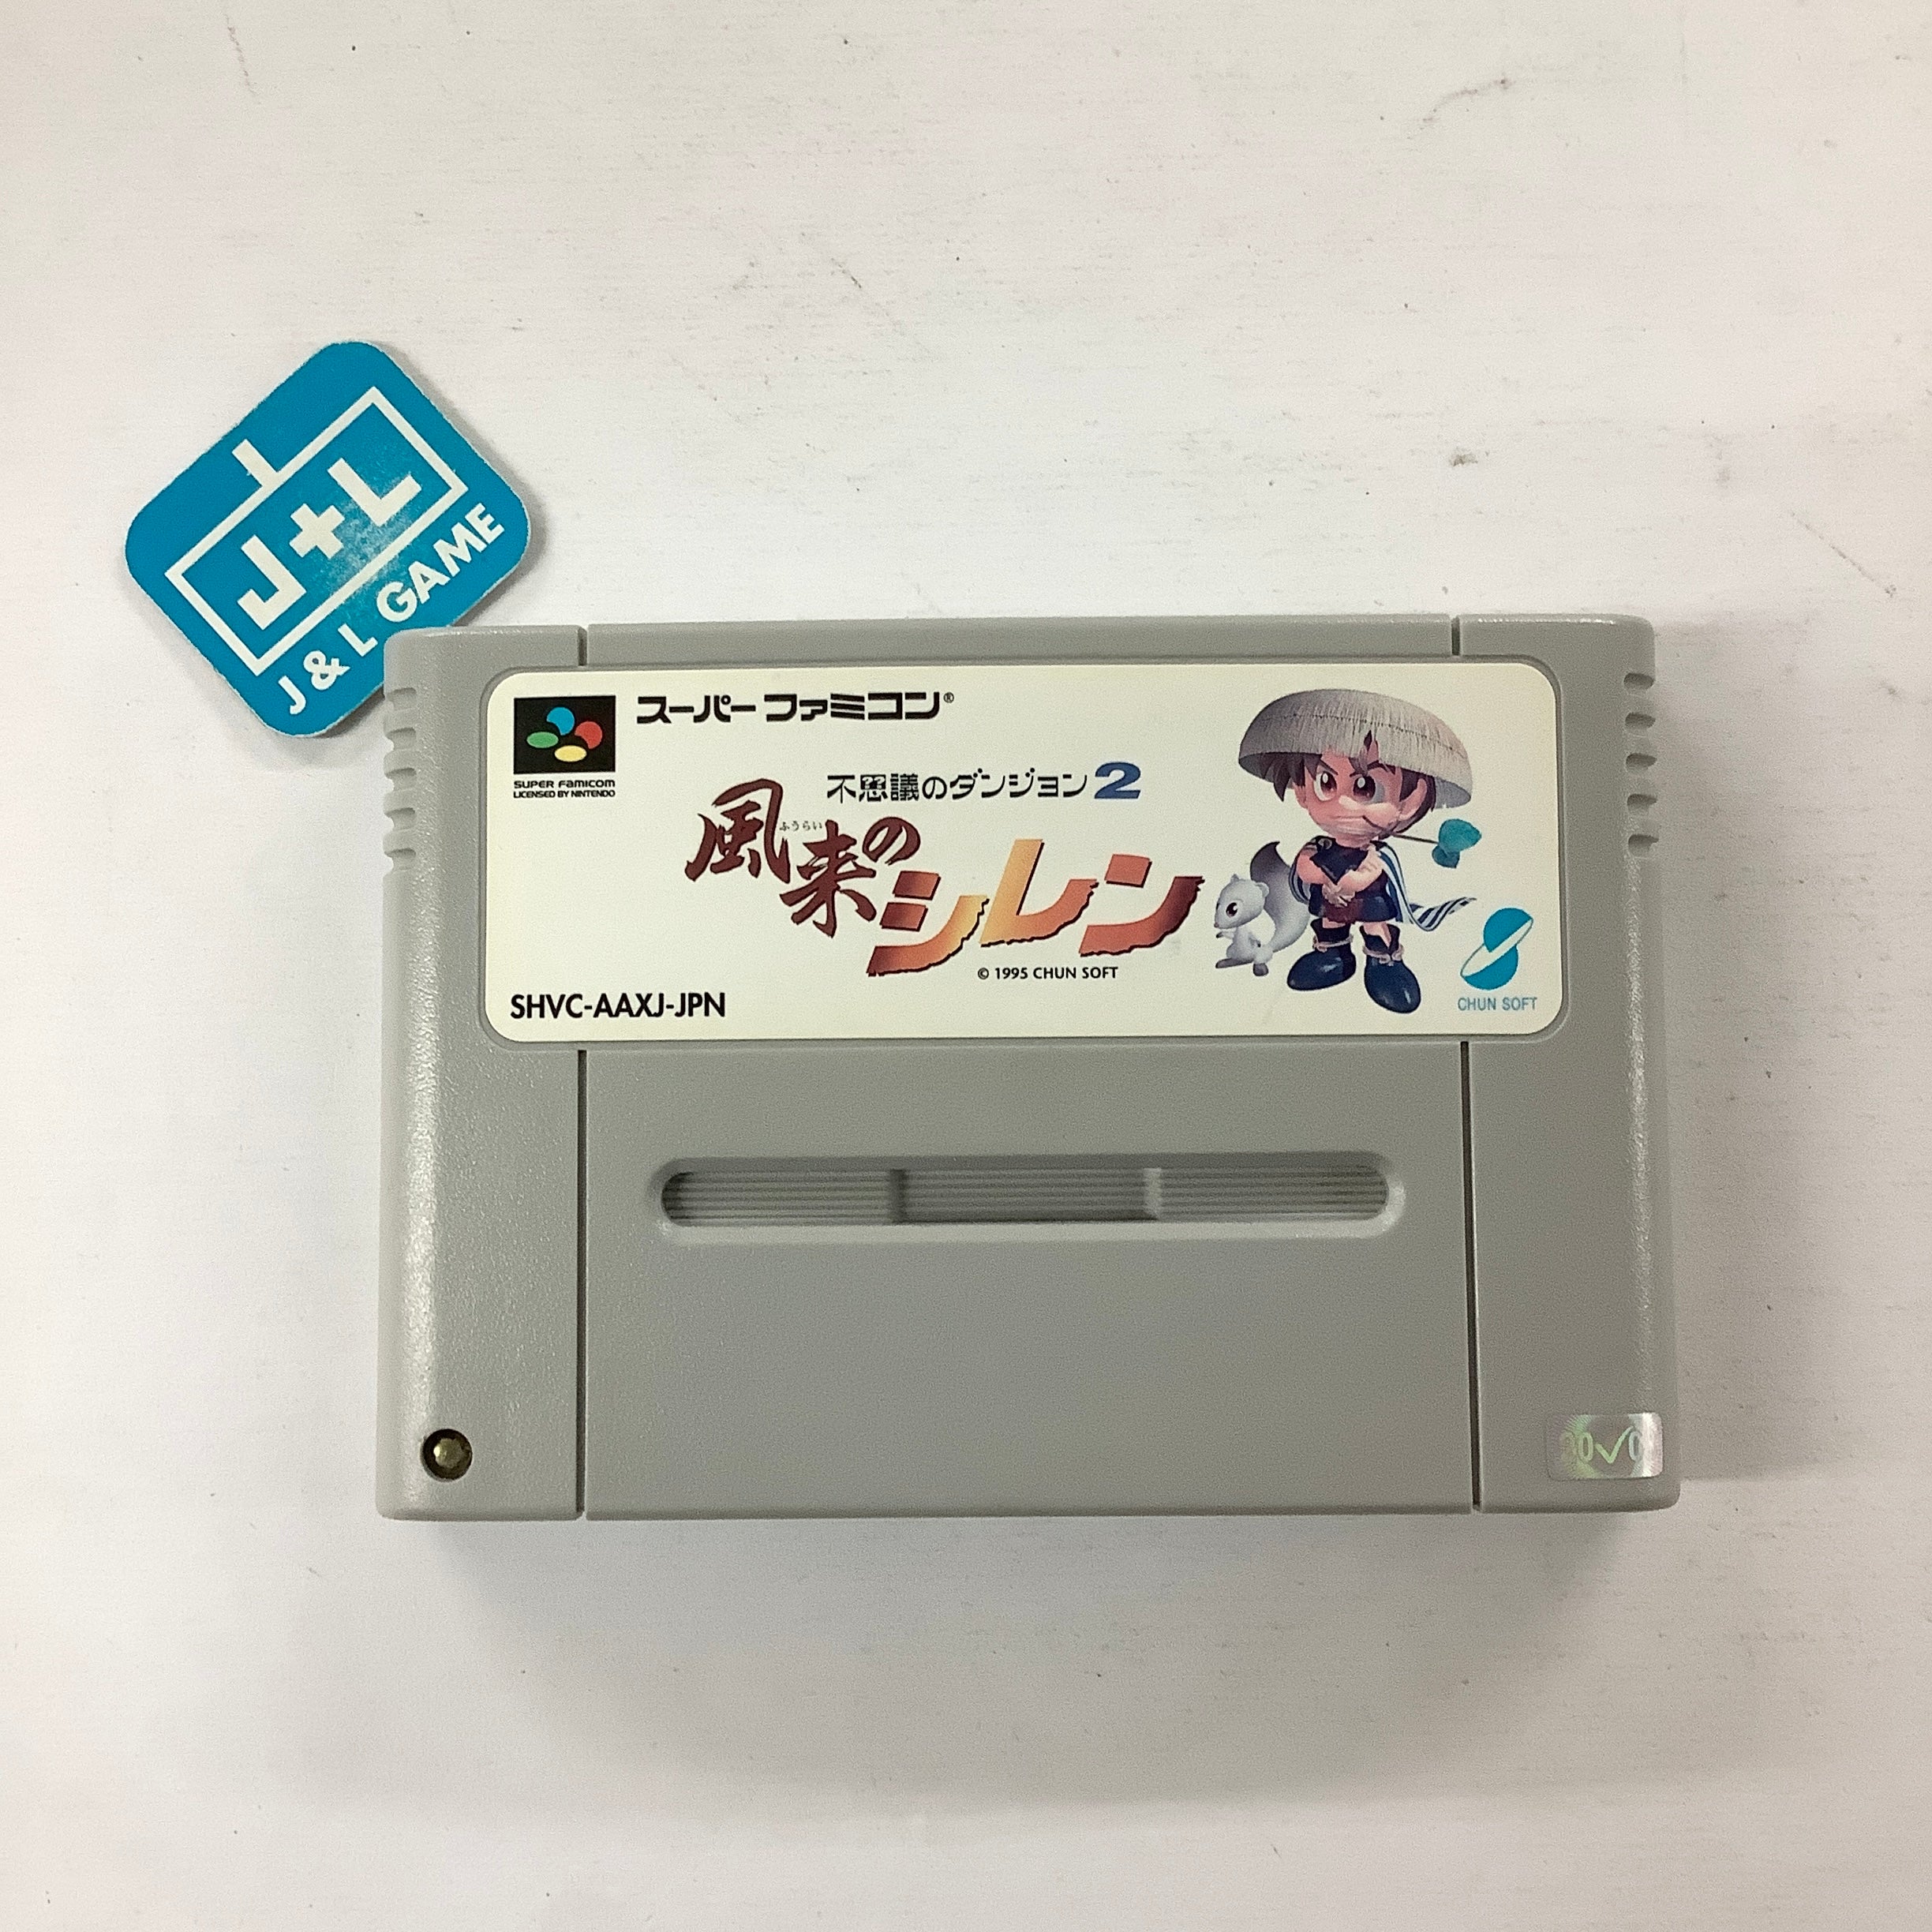 Fushigi no Dungeon 2: Fuurai no Shiren - (SFC) Super Famicom [Pre-Owned] (Japanese Import) Video Games ChunSoft   